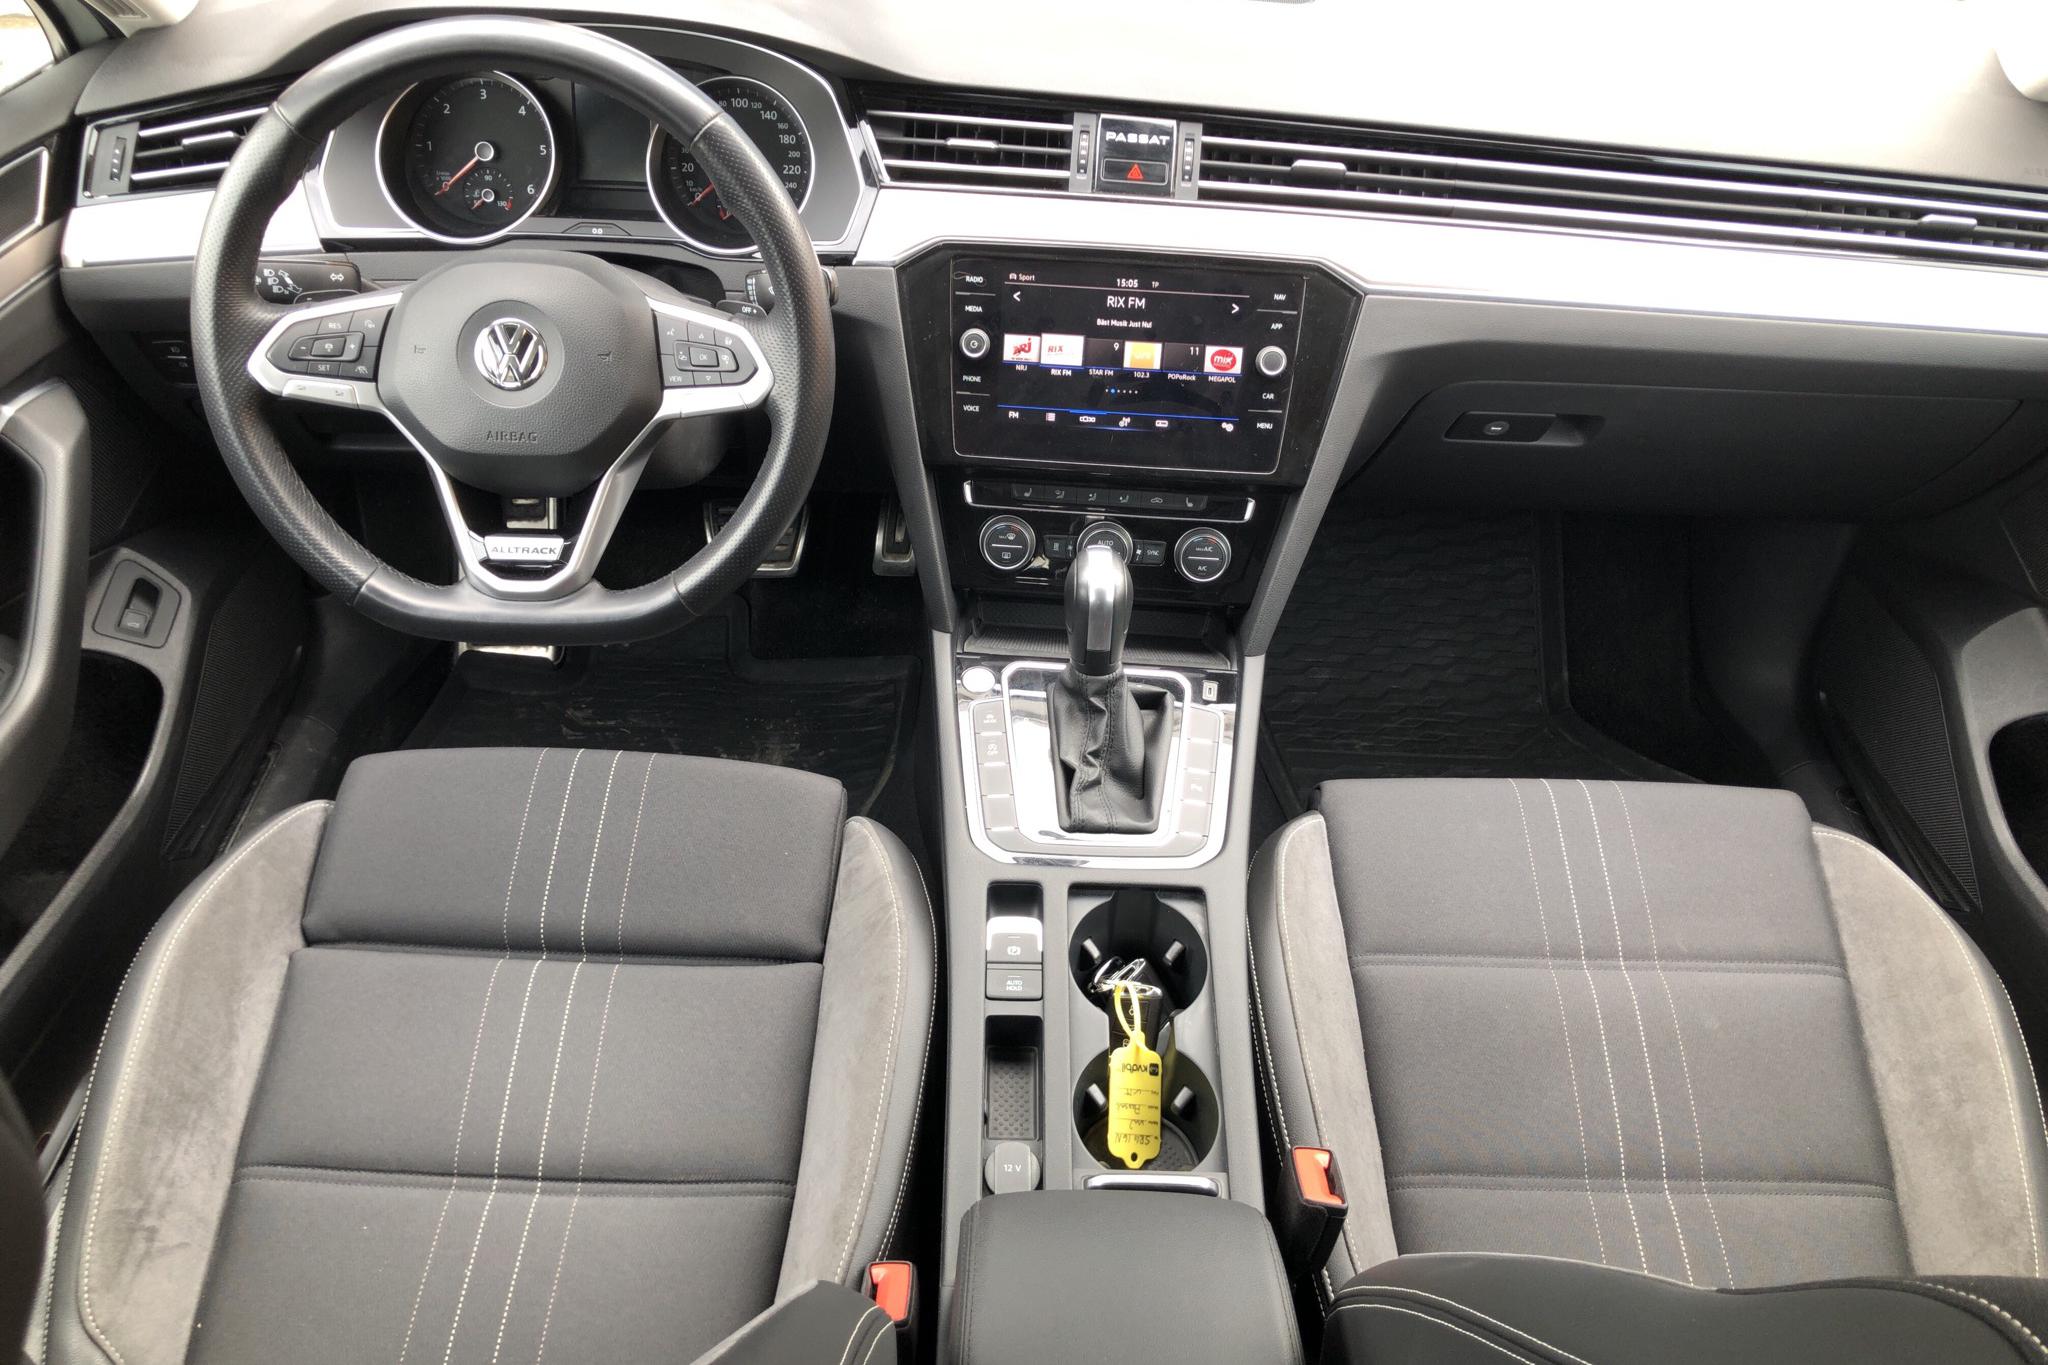 VW Passat 2.0 TDI Alltrack 4MOTION (190hk) - 5 239 mil - Automat - vit - 2020